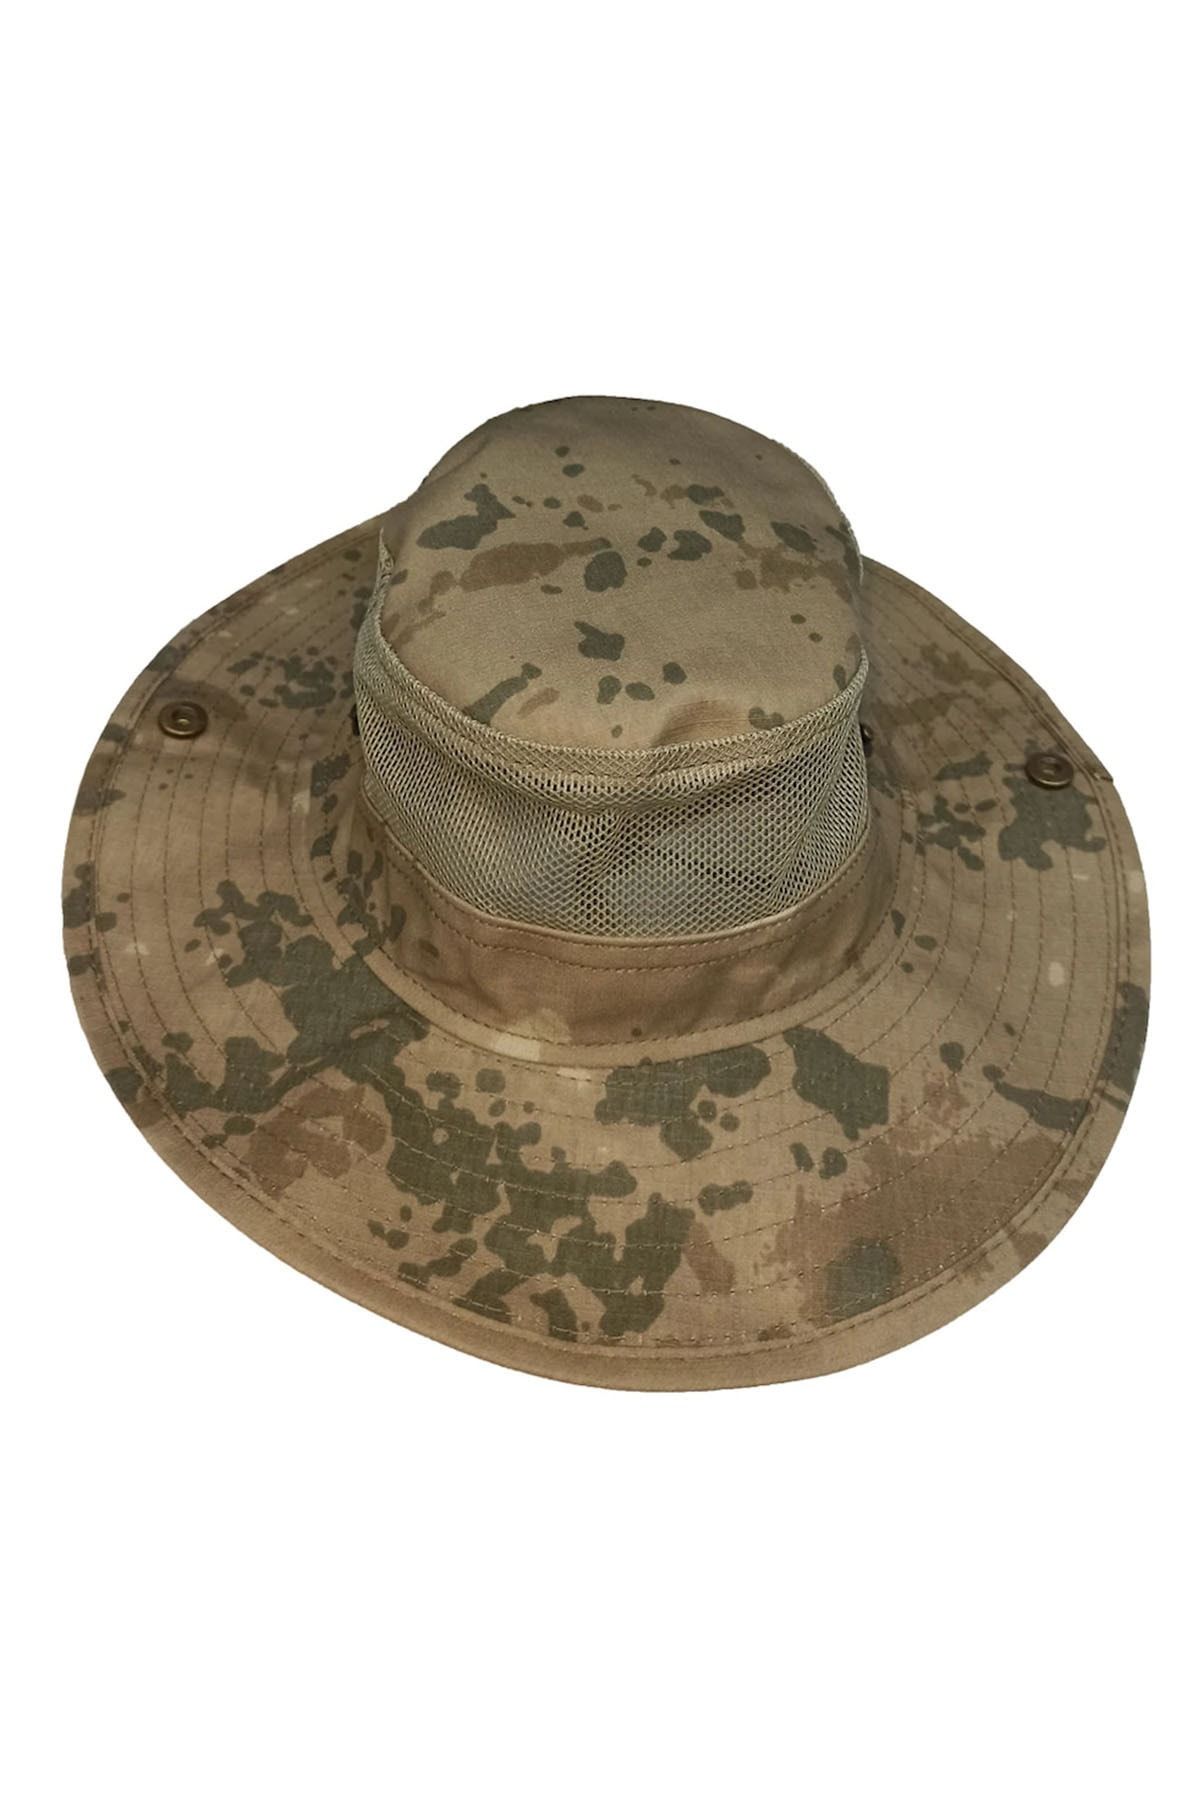 Asker Kolisi Jandarma Kamuflaj Askeri Jungle Şapka - Çöl Fötr Operasyon Şapkası